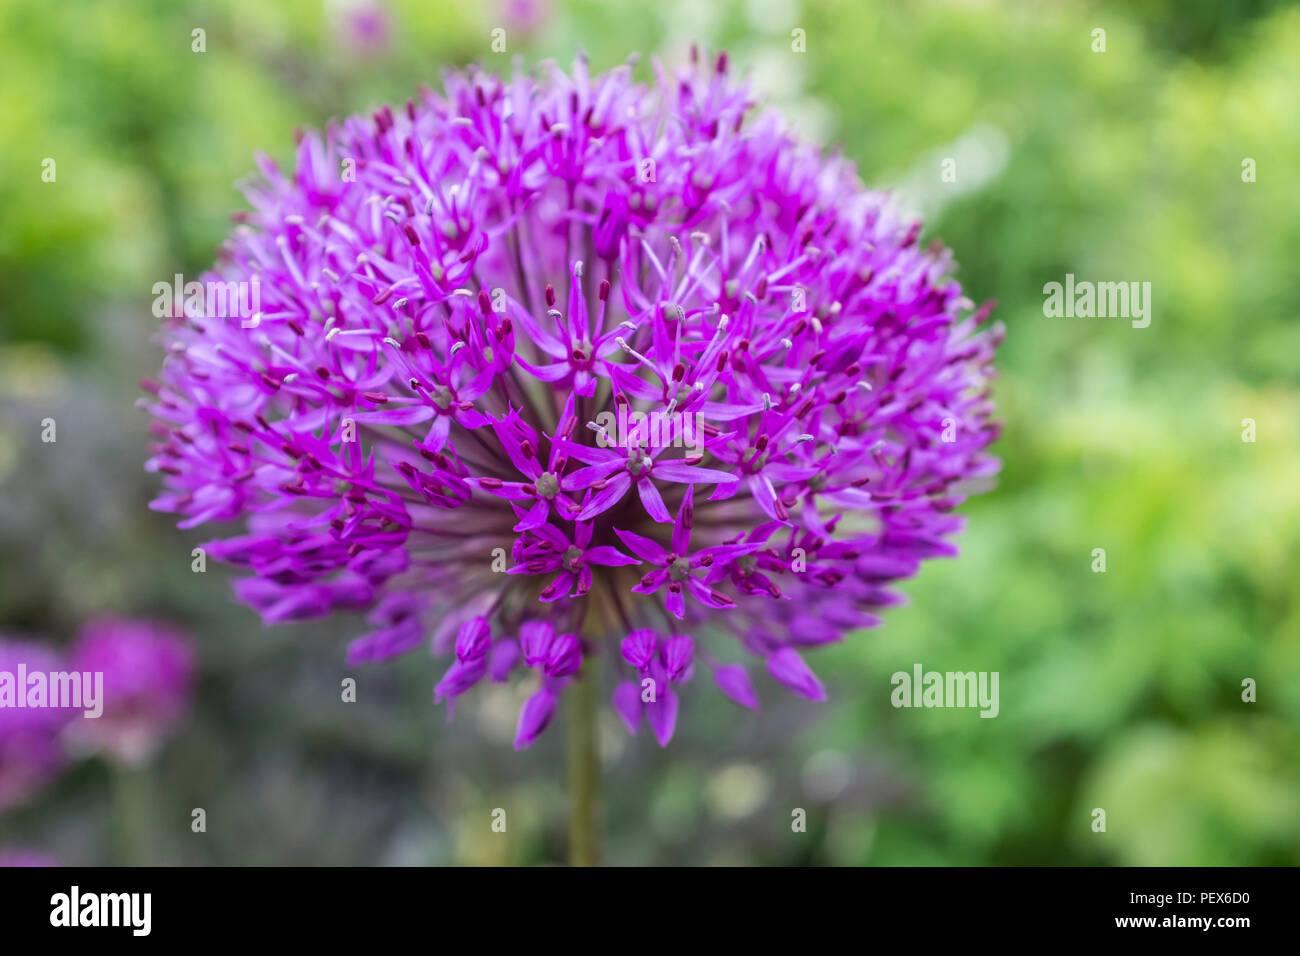 The beautiful Globe thistle flower, echinops bannaticus Stock Photo